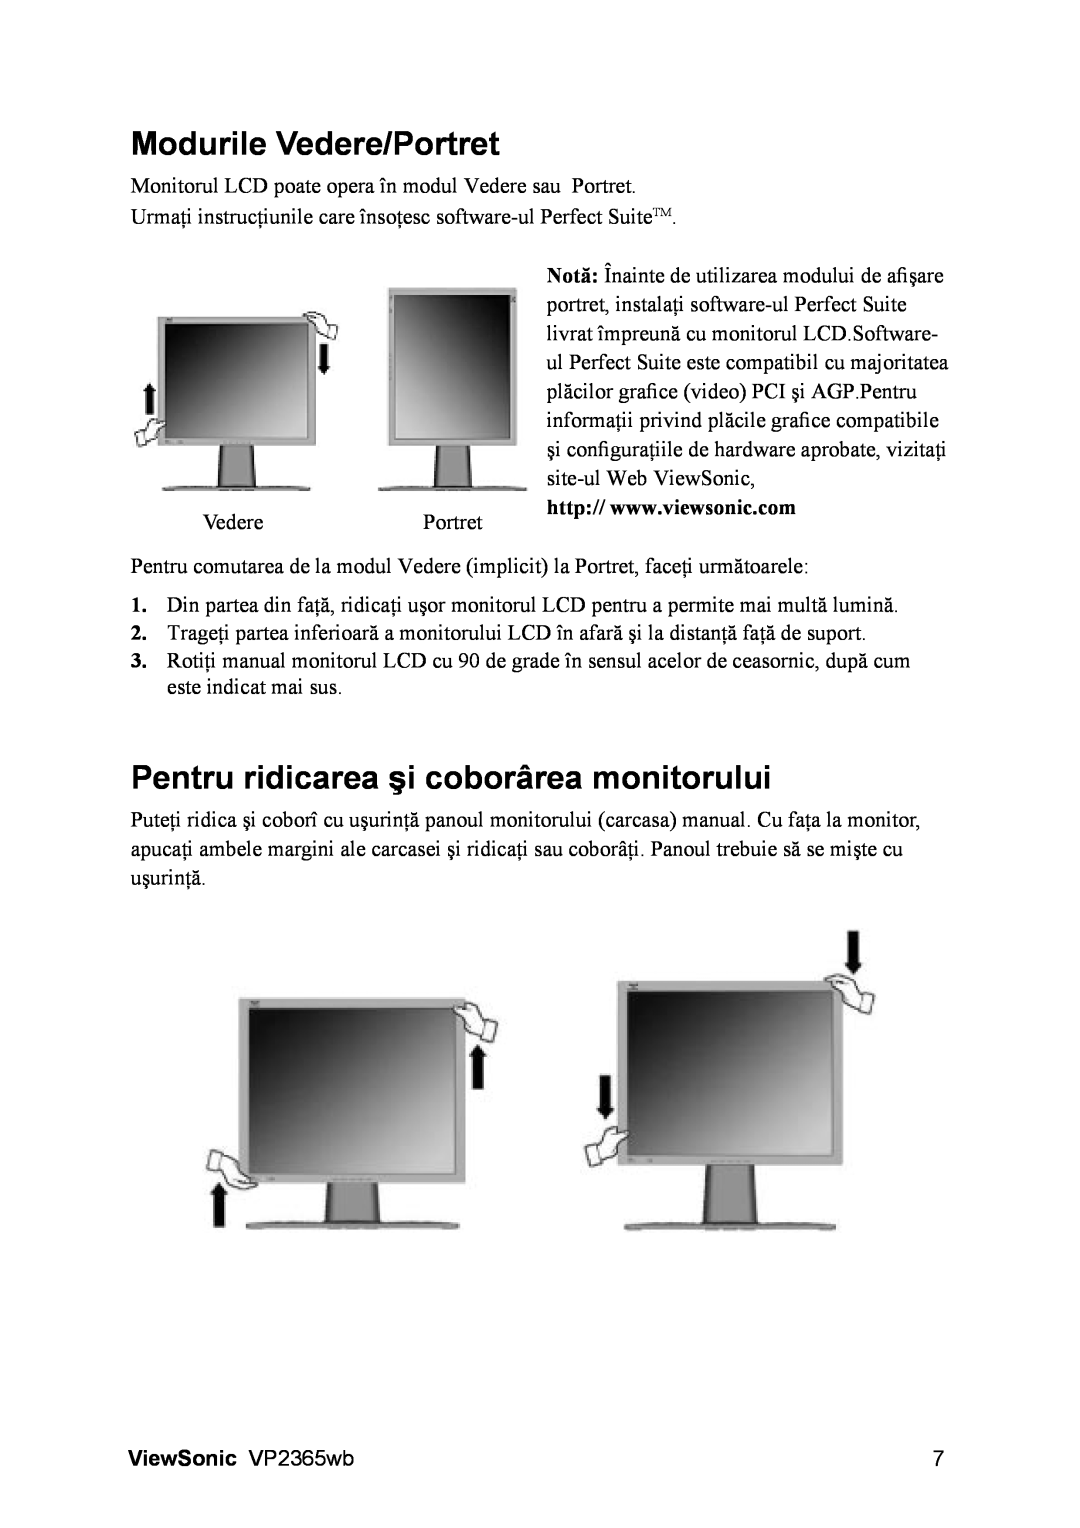 ViewSonic VS12637 manual Modurile Vedere/Portret, Pentru ridicarea şi coborârea monitorului, ViewSonic VP2365wb 